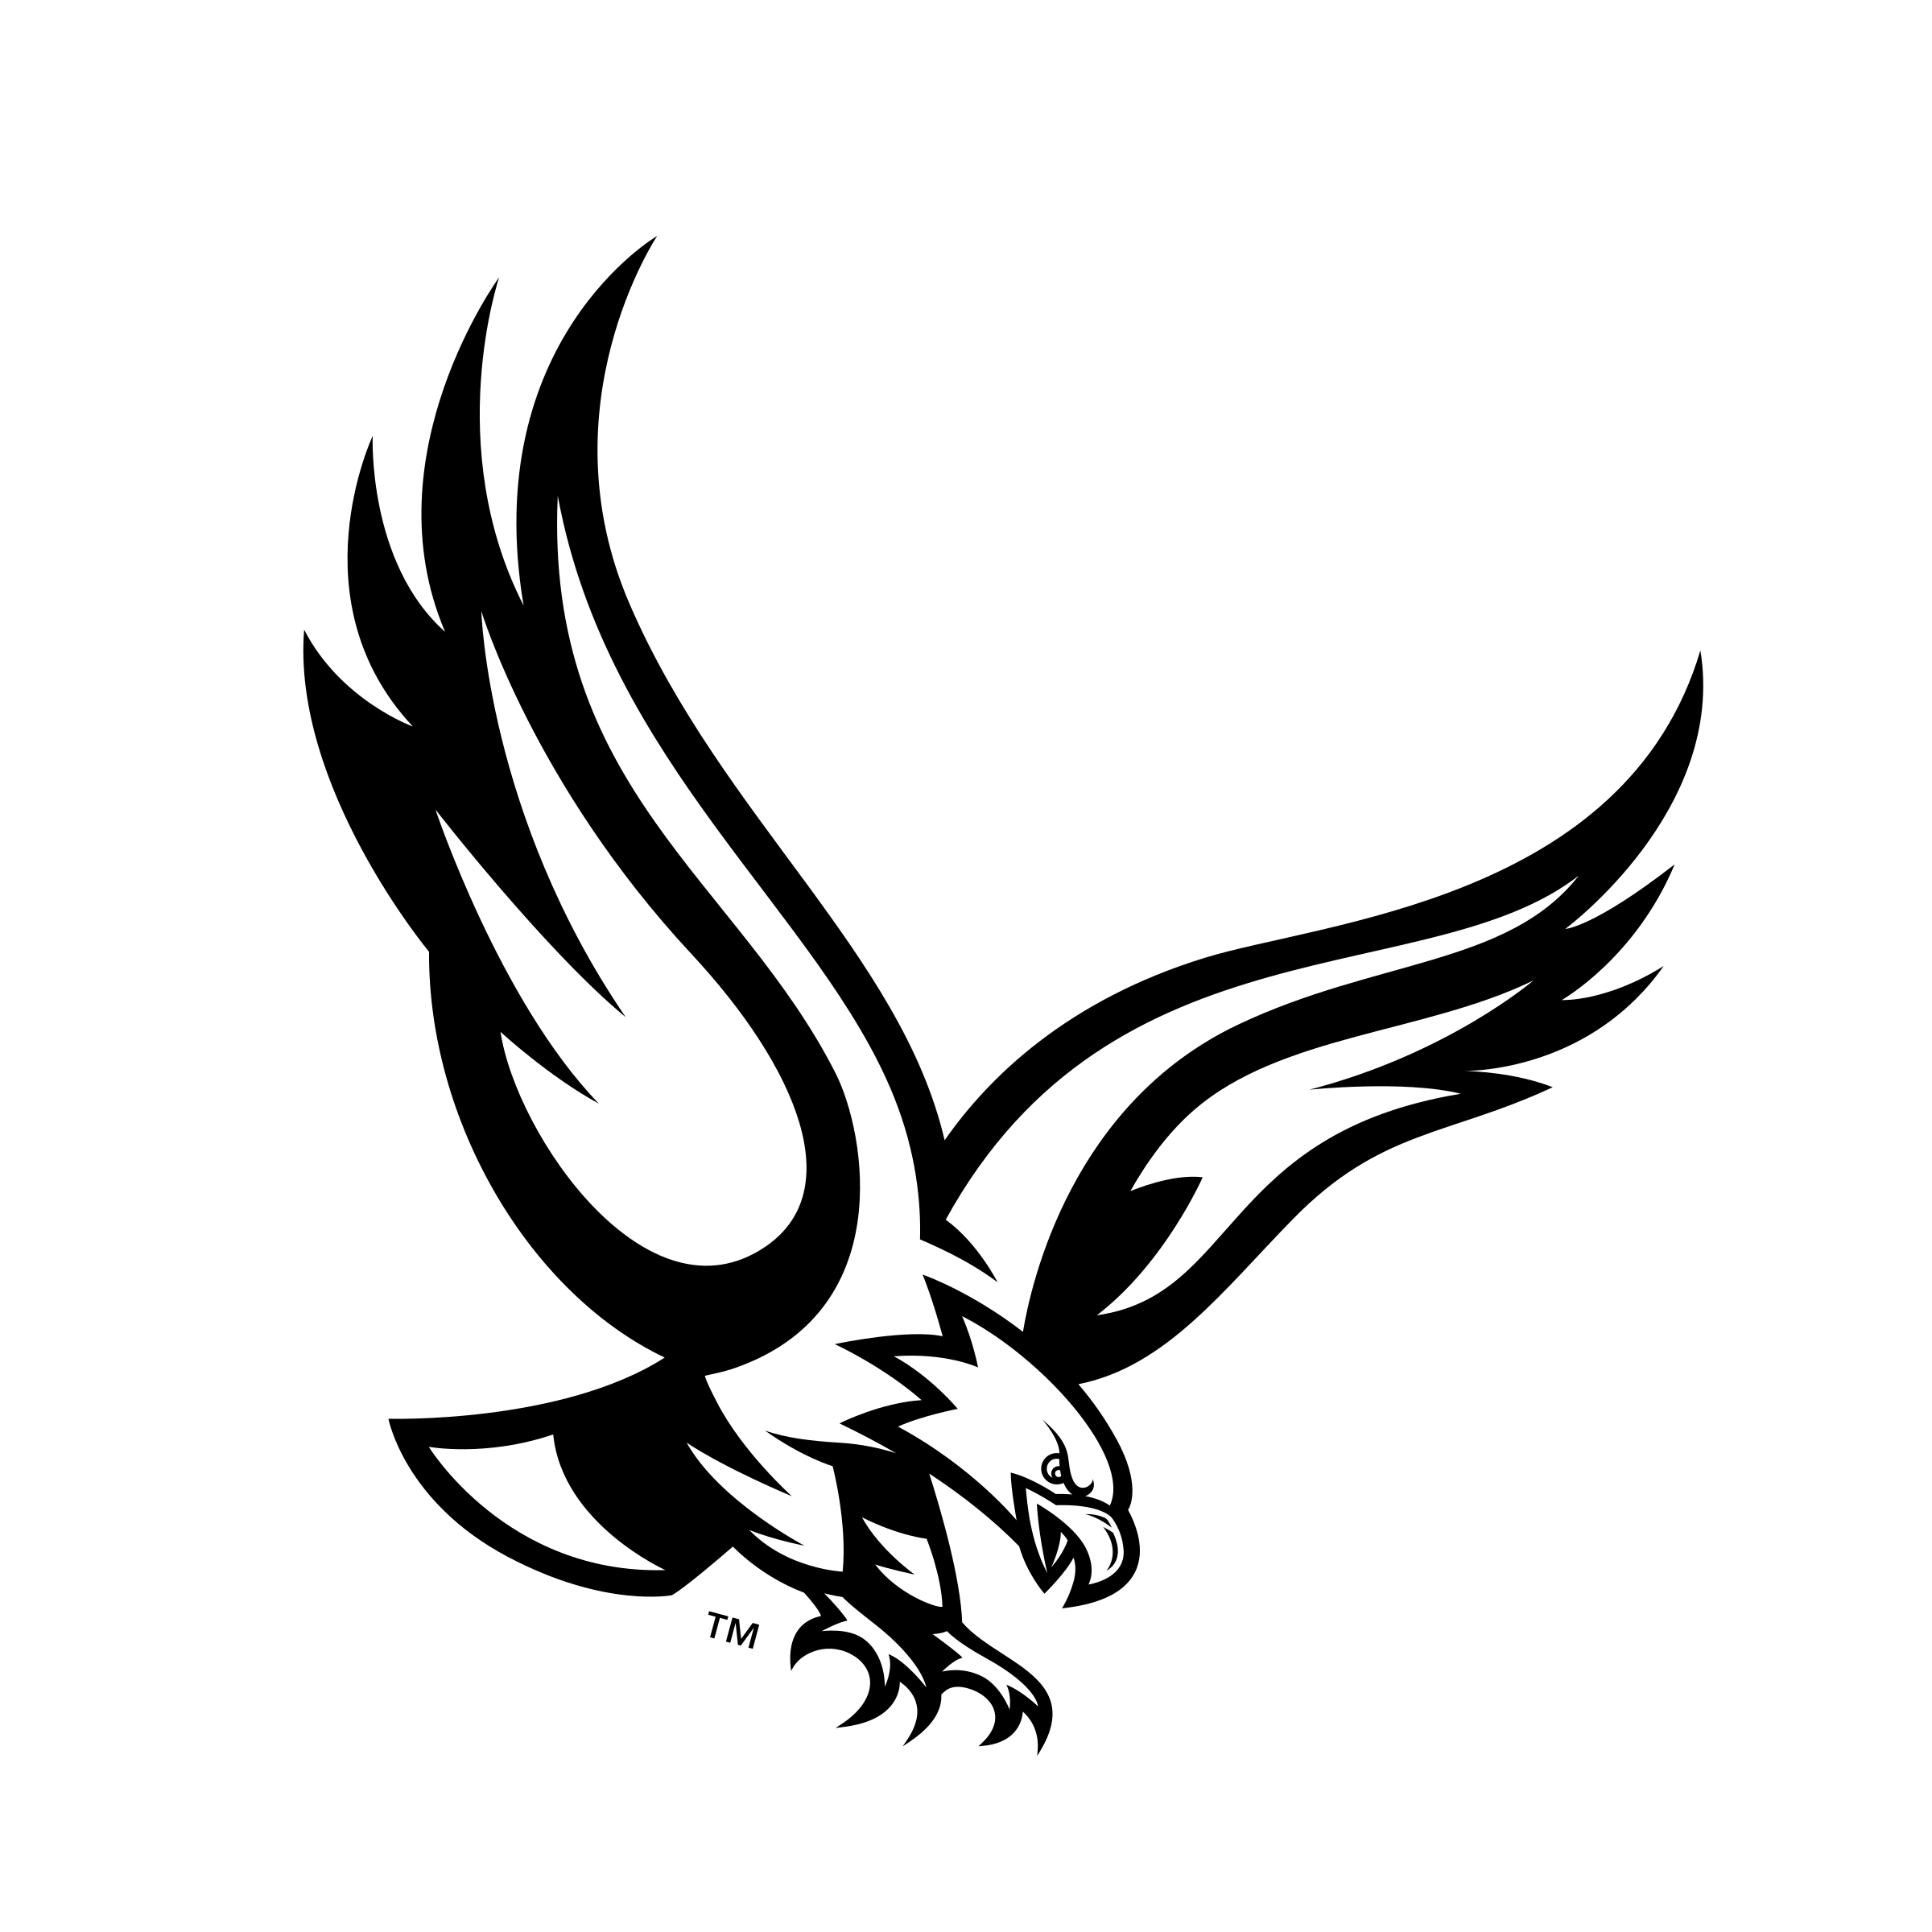 النسور logo PNG صورة شفافة